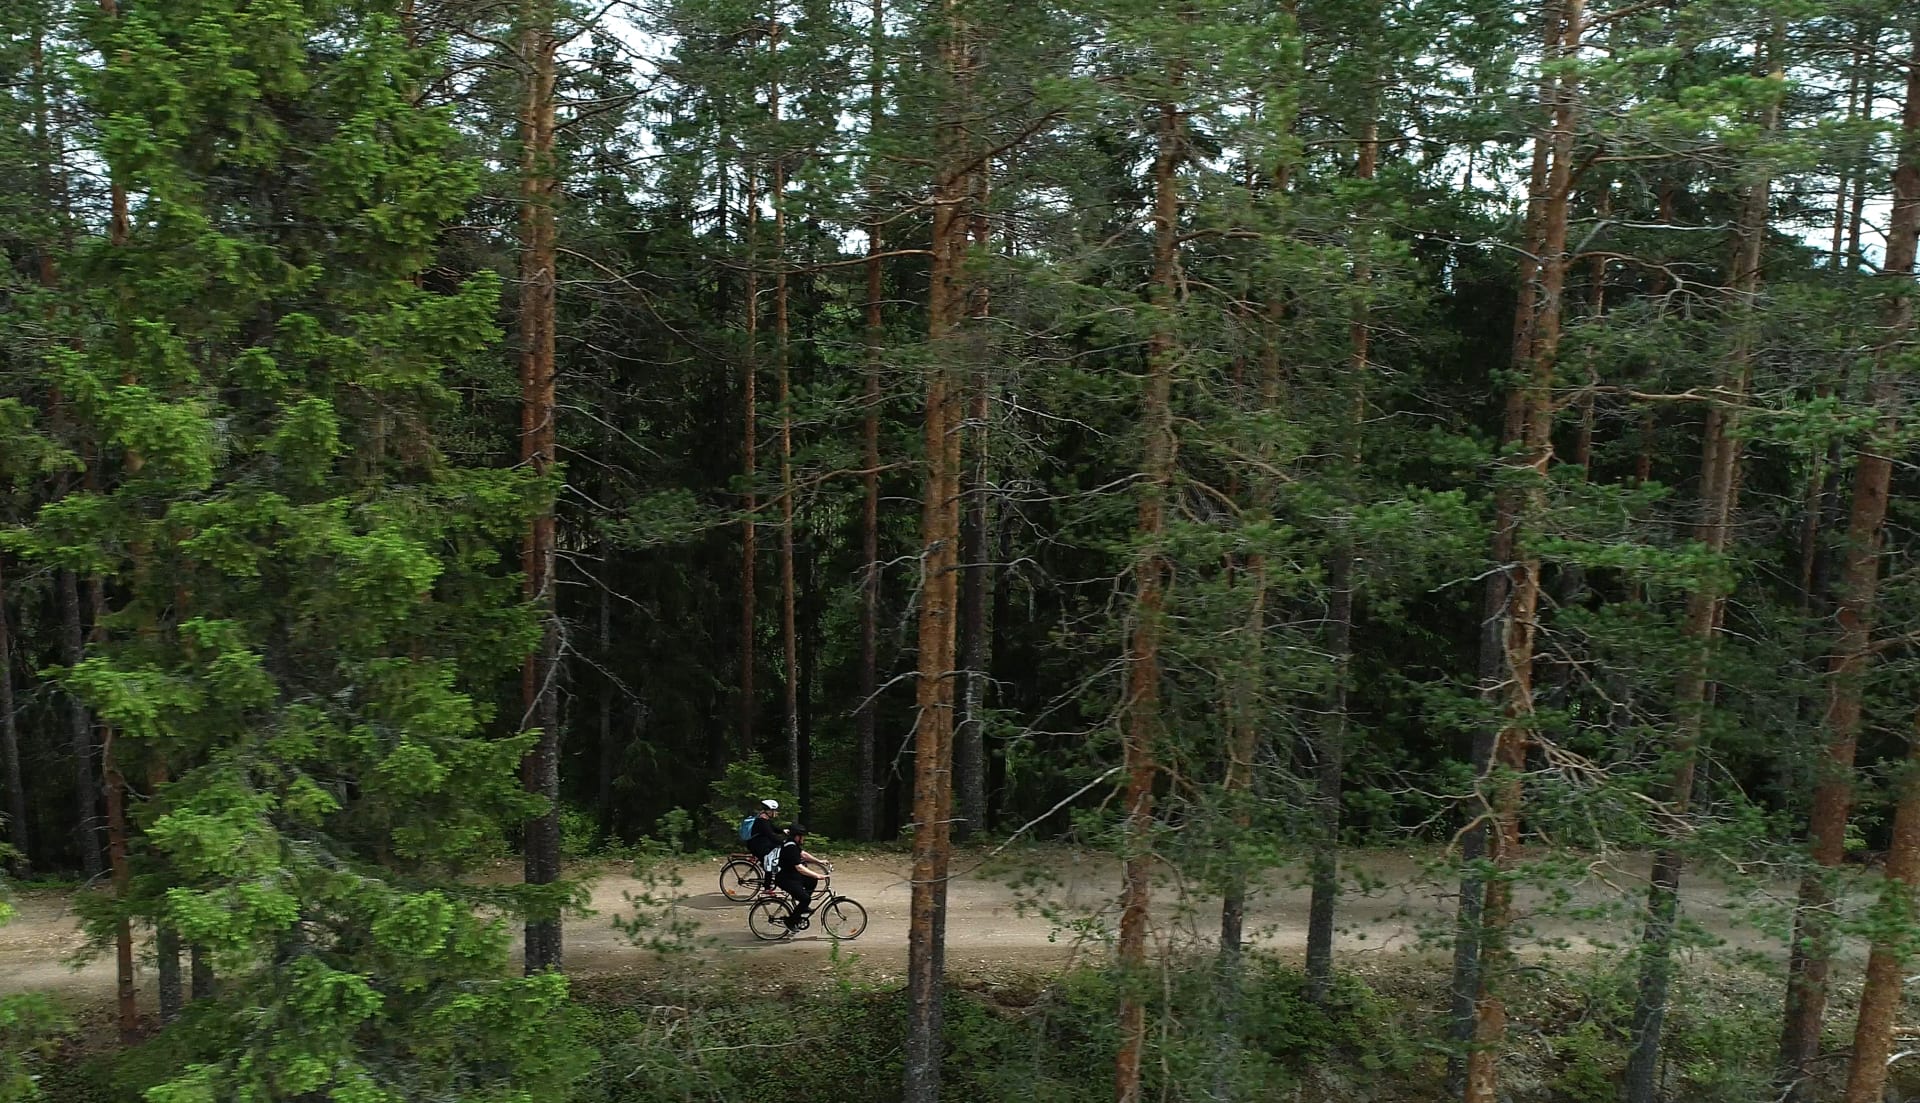 Kaksi pyöräilijää hiekkatiellä rinnakkain kuvattu puunrunkojen takaa ilmasta.Kuva: Jari Salonen